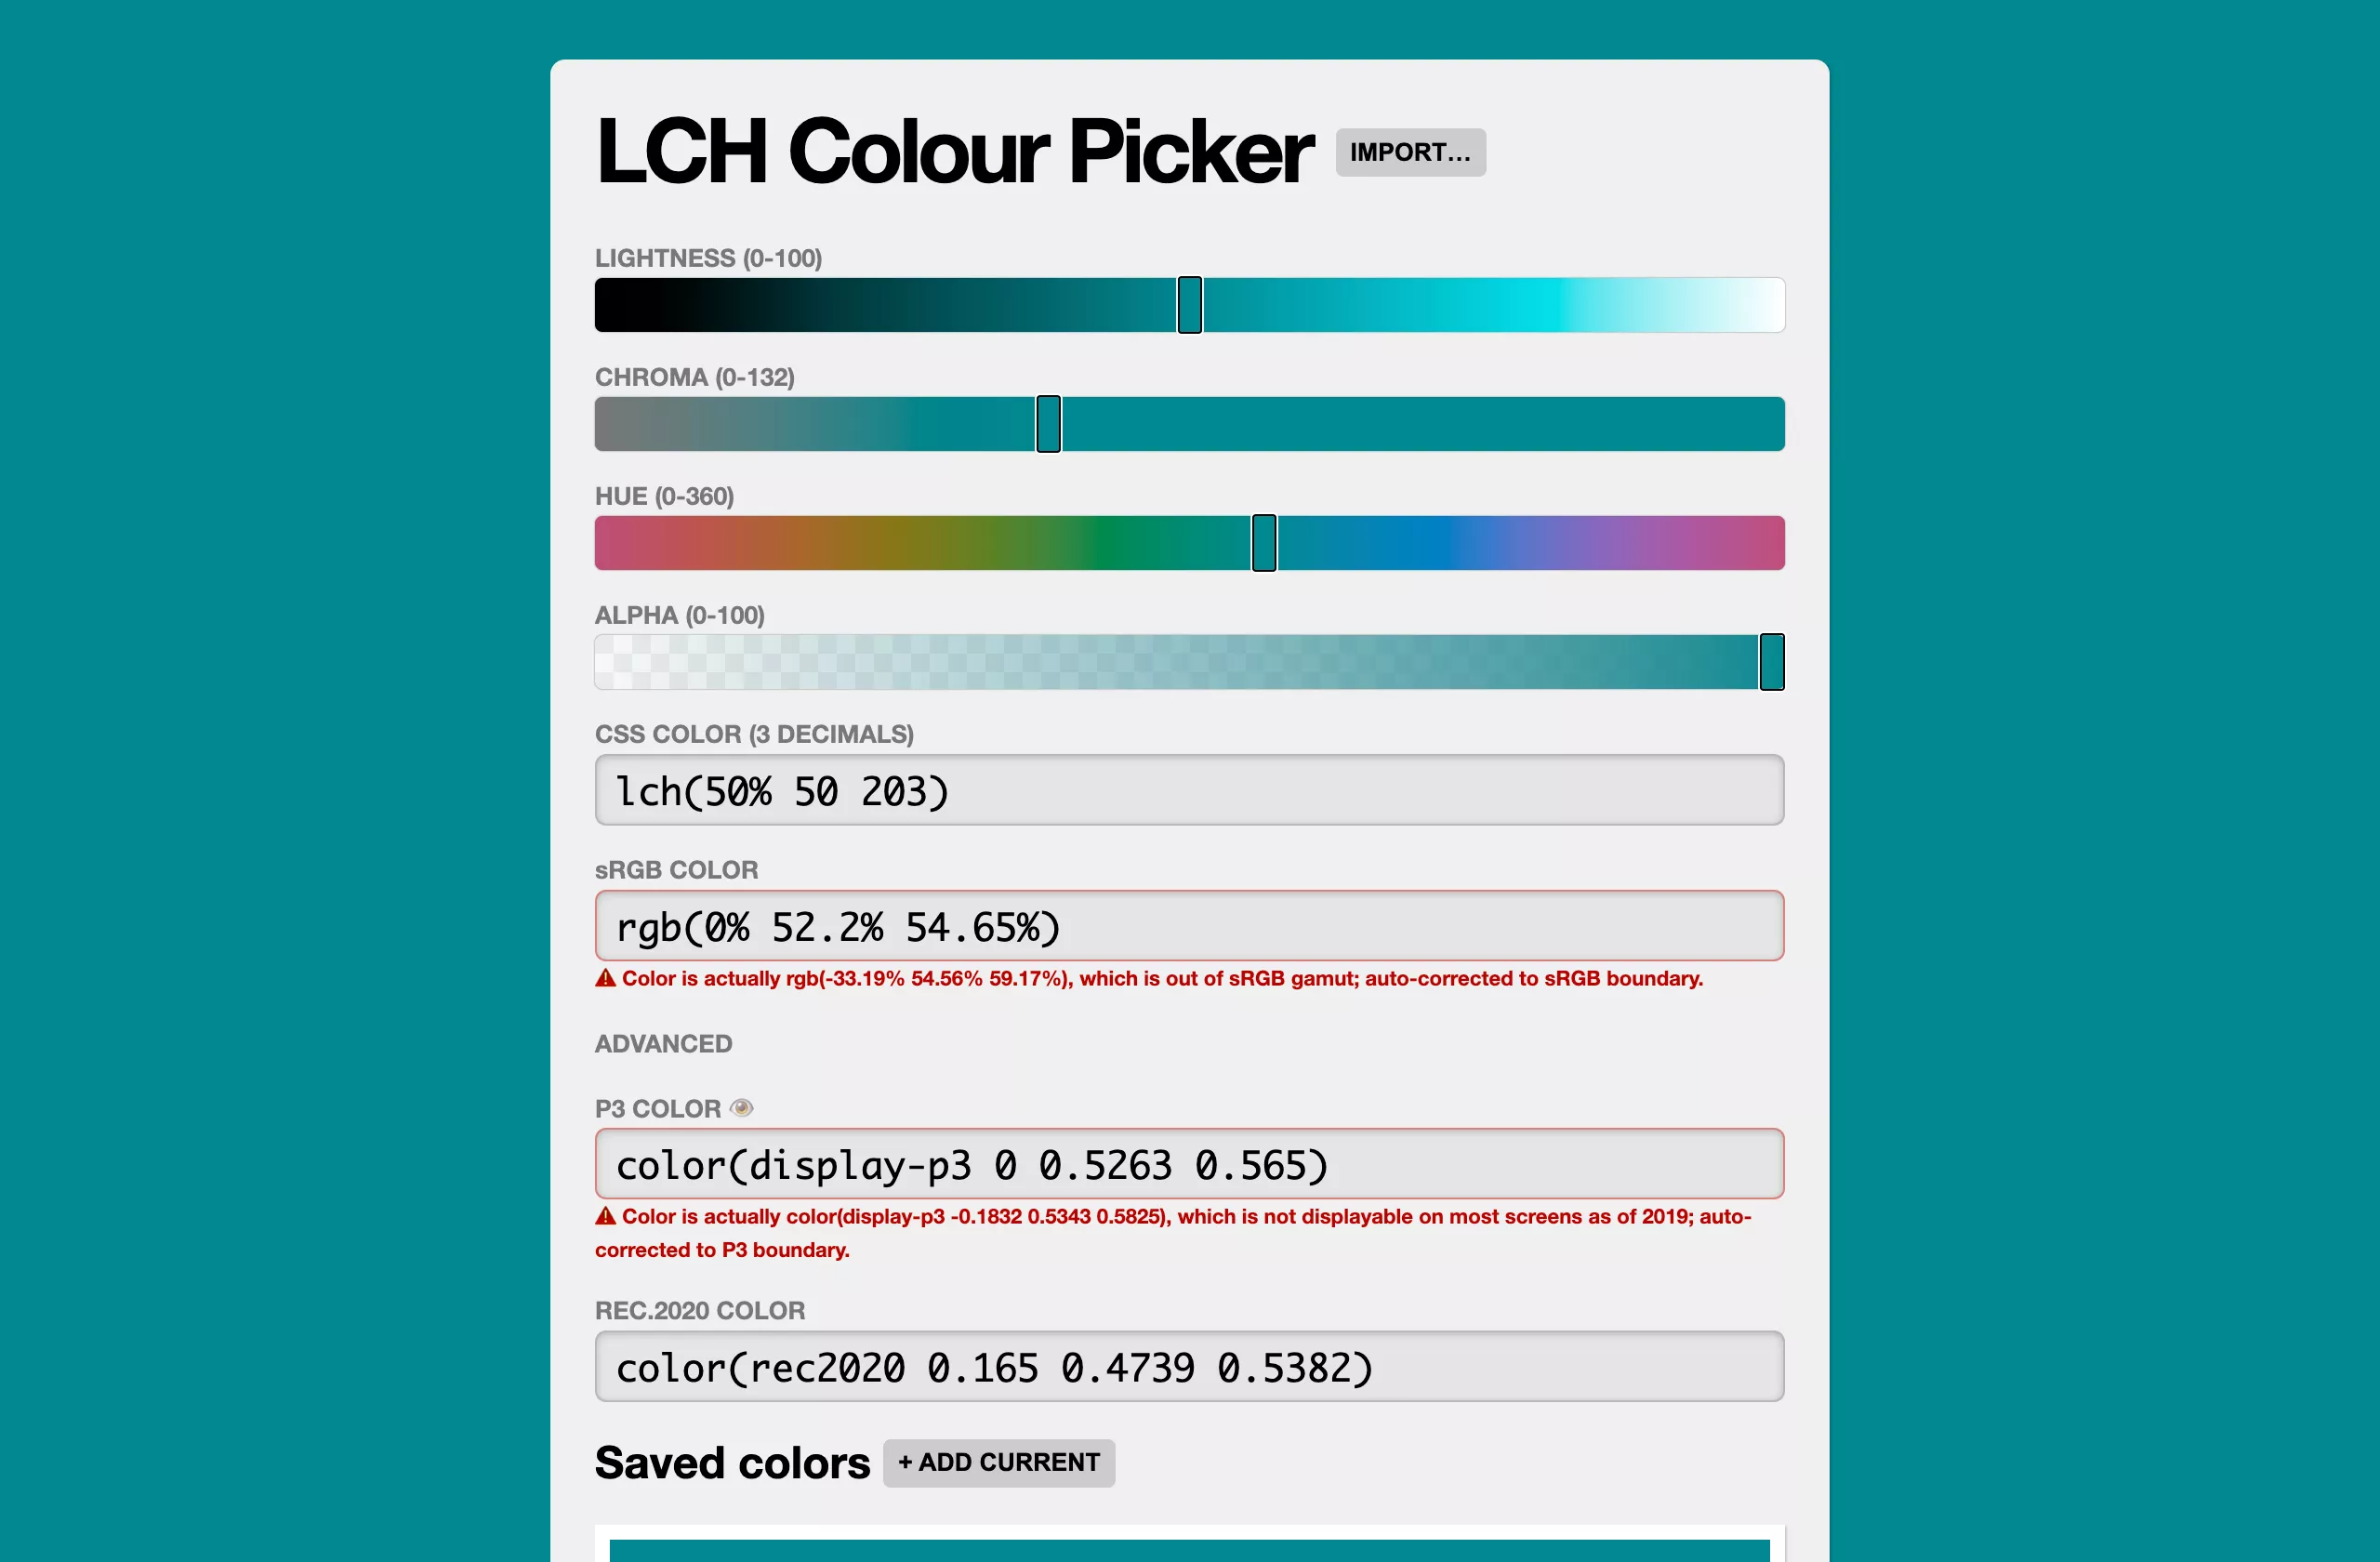 LCH Colour Picker